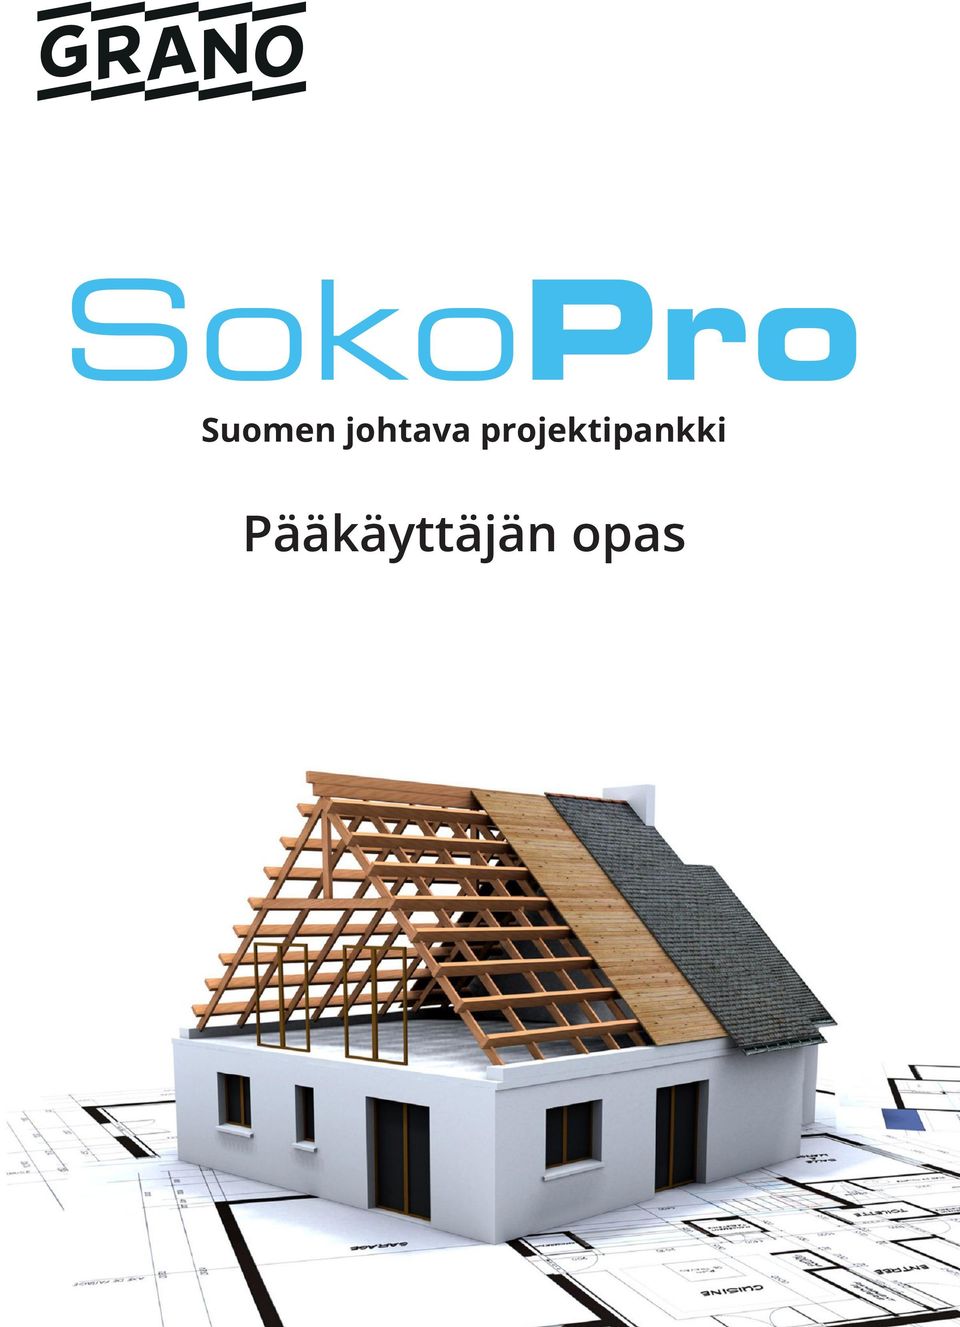 Suomen johtava projektipankki. Pääkäyttäjän opas - PDF Ilmainen lataus